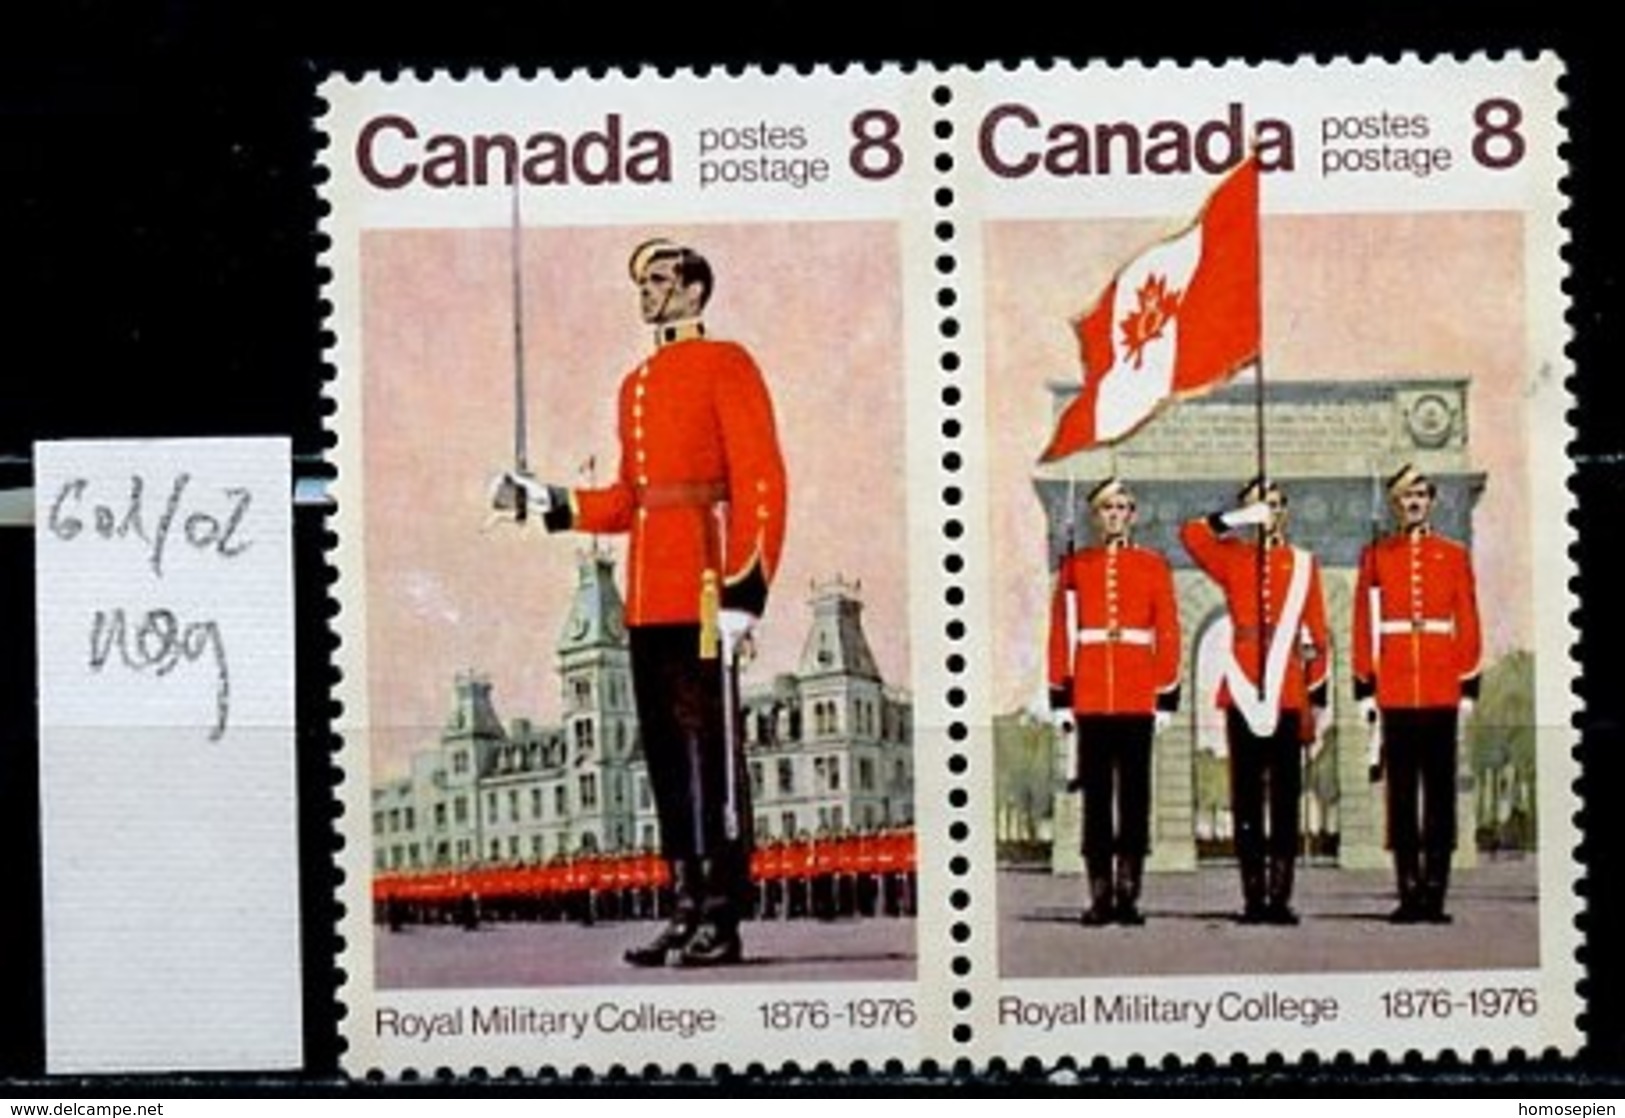 Canada - Kanada 1976 Y&T N°601 à 602 - Michel N°628 à 629 Nsg - Série Collège Militaire - Neufs